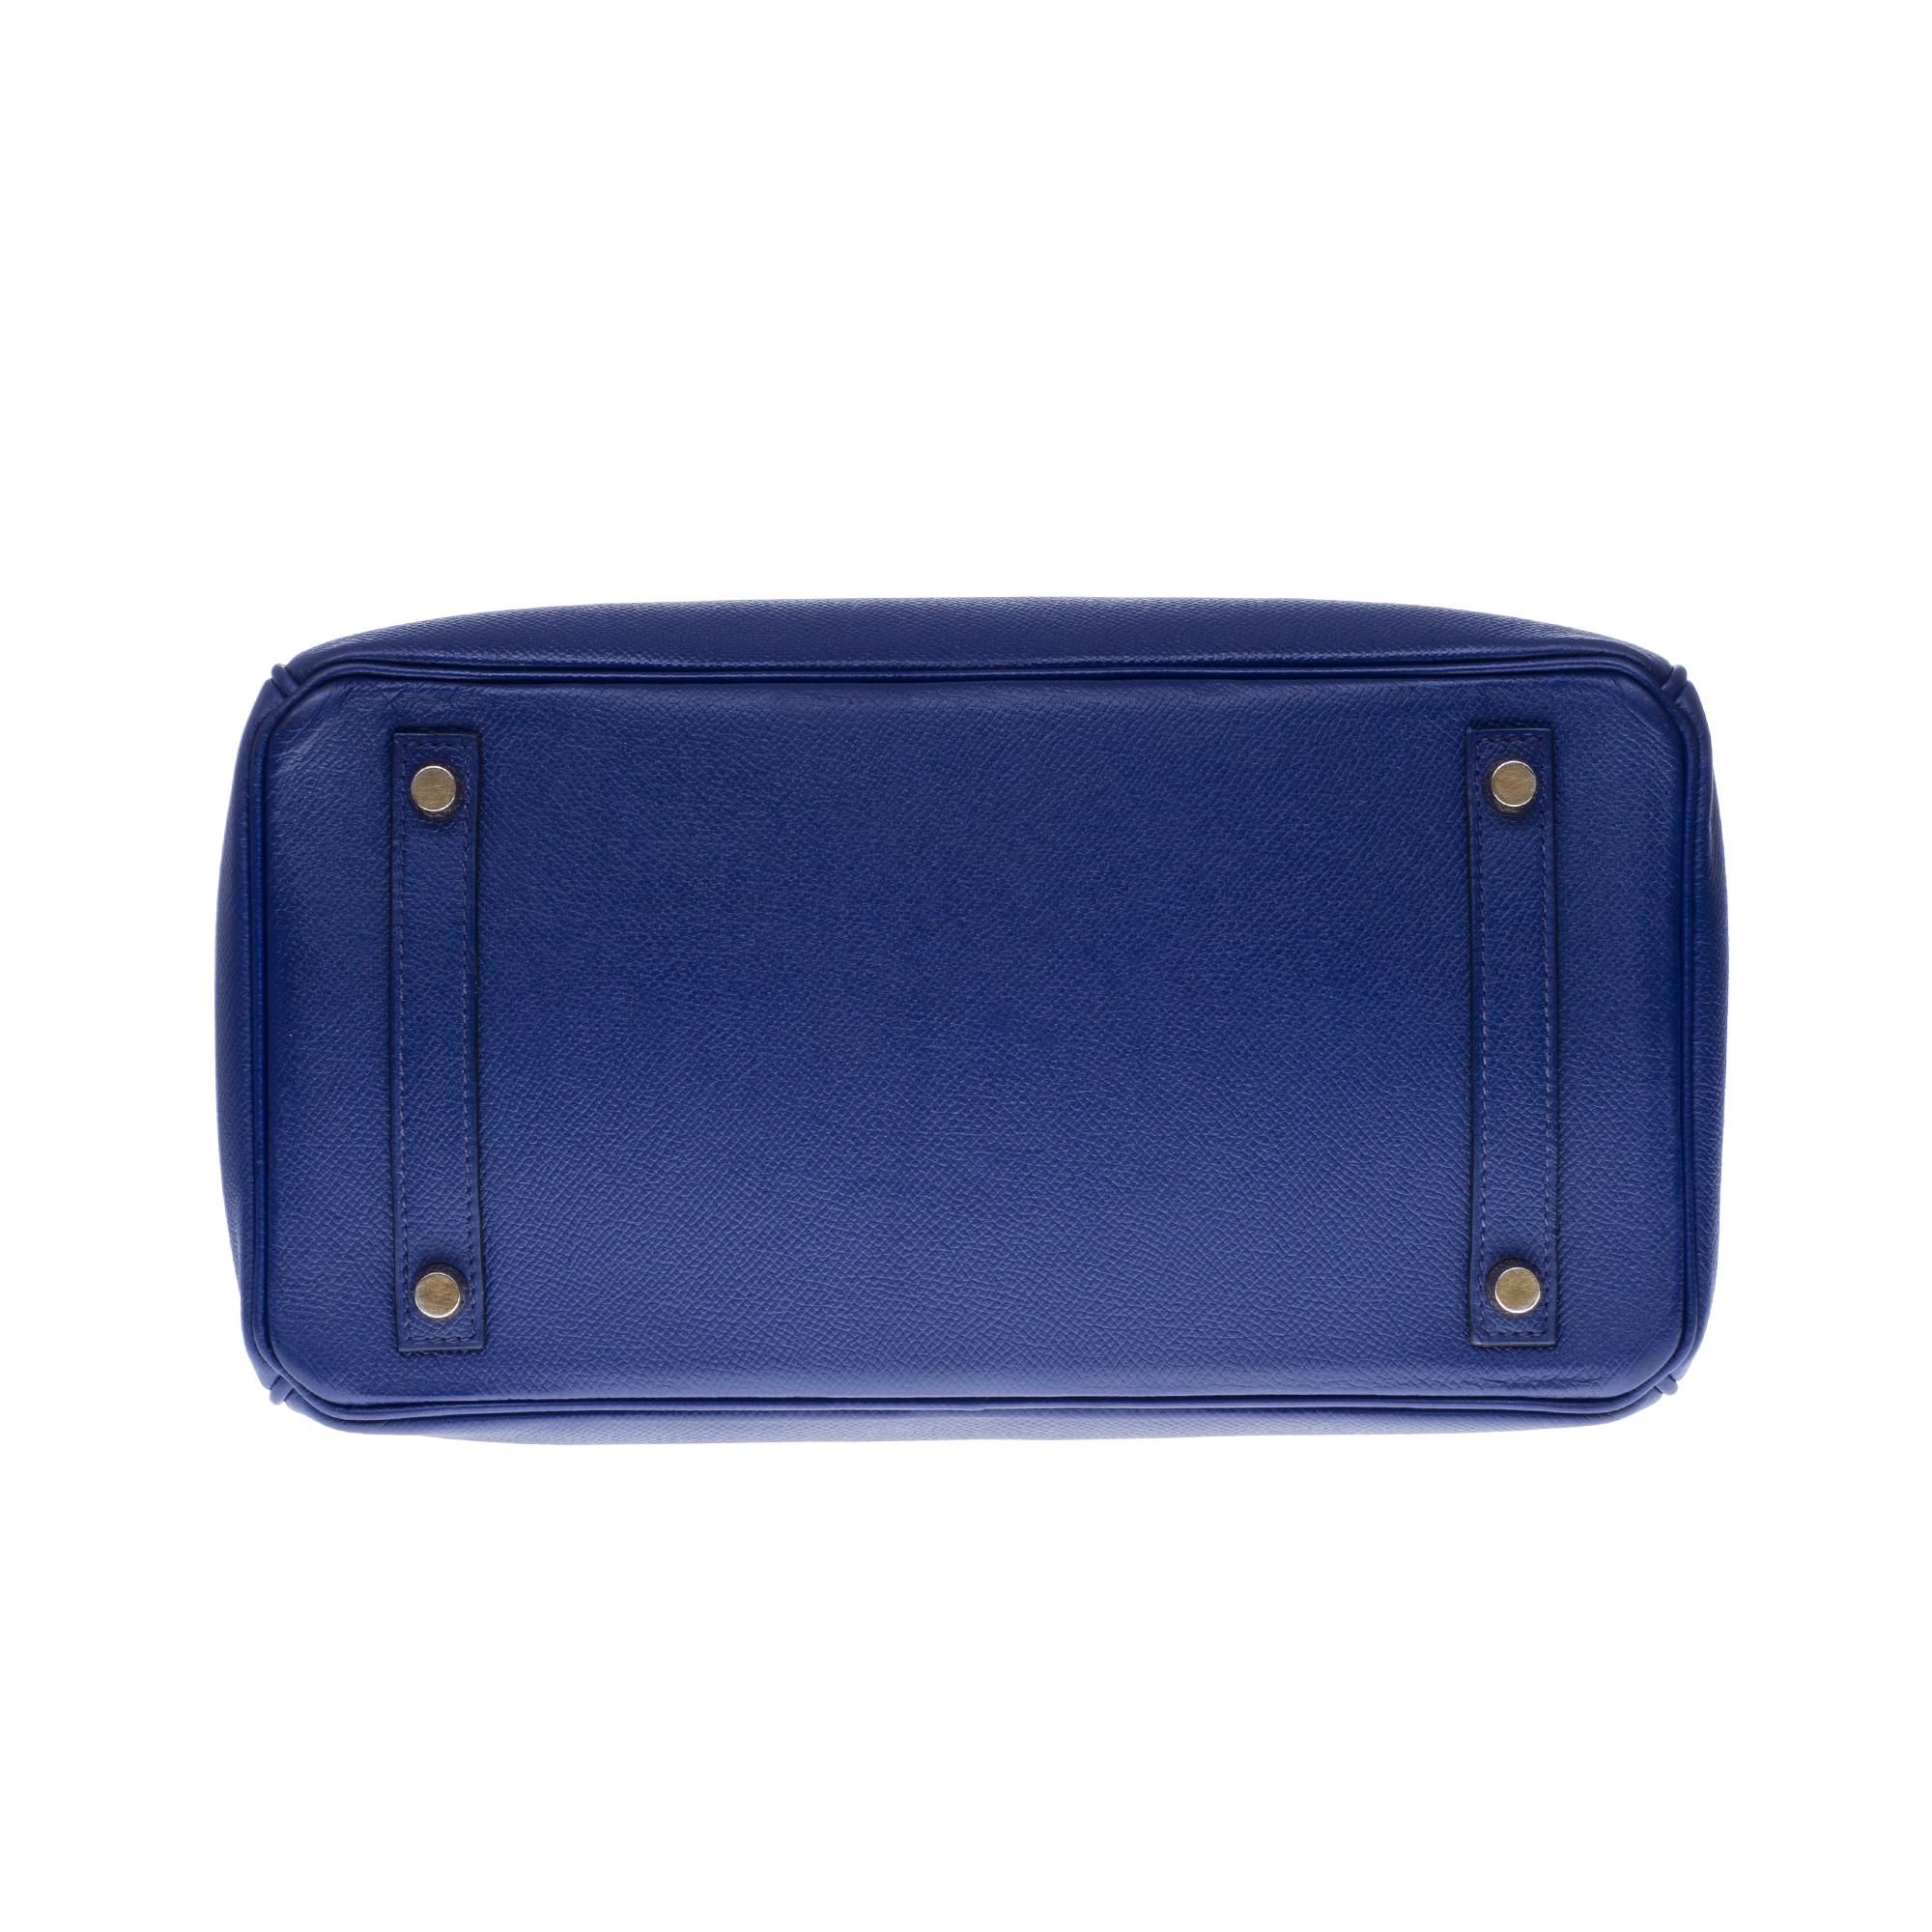 Almost New - Hermès Birkin 30 handbag in Blue Encre Epsom leather, gold hardware 5